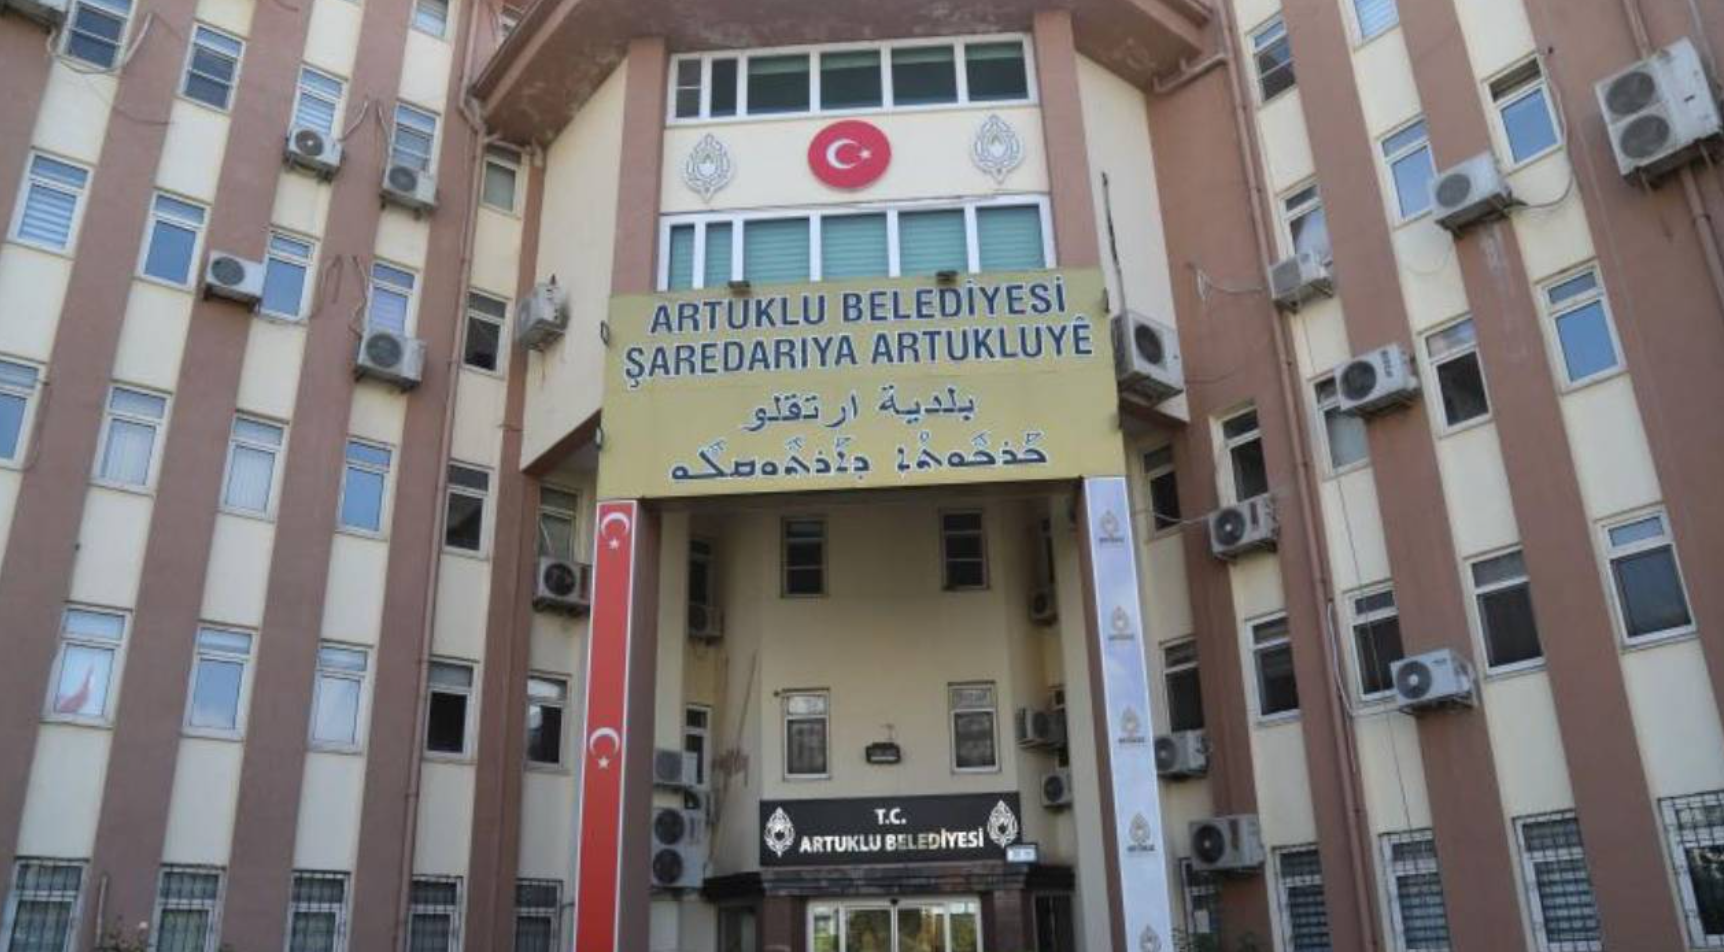 AKP döneminde işe alınan ‘bankamatik personelleri’ tespit edildi: ”AKP’lilerin ise oturdukları yerden maaş aldıklarını tespit edildi’